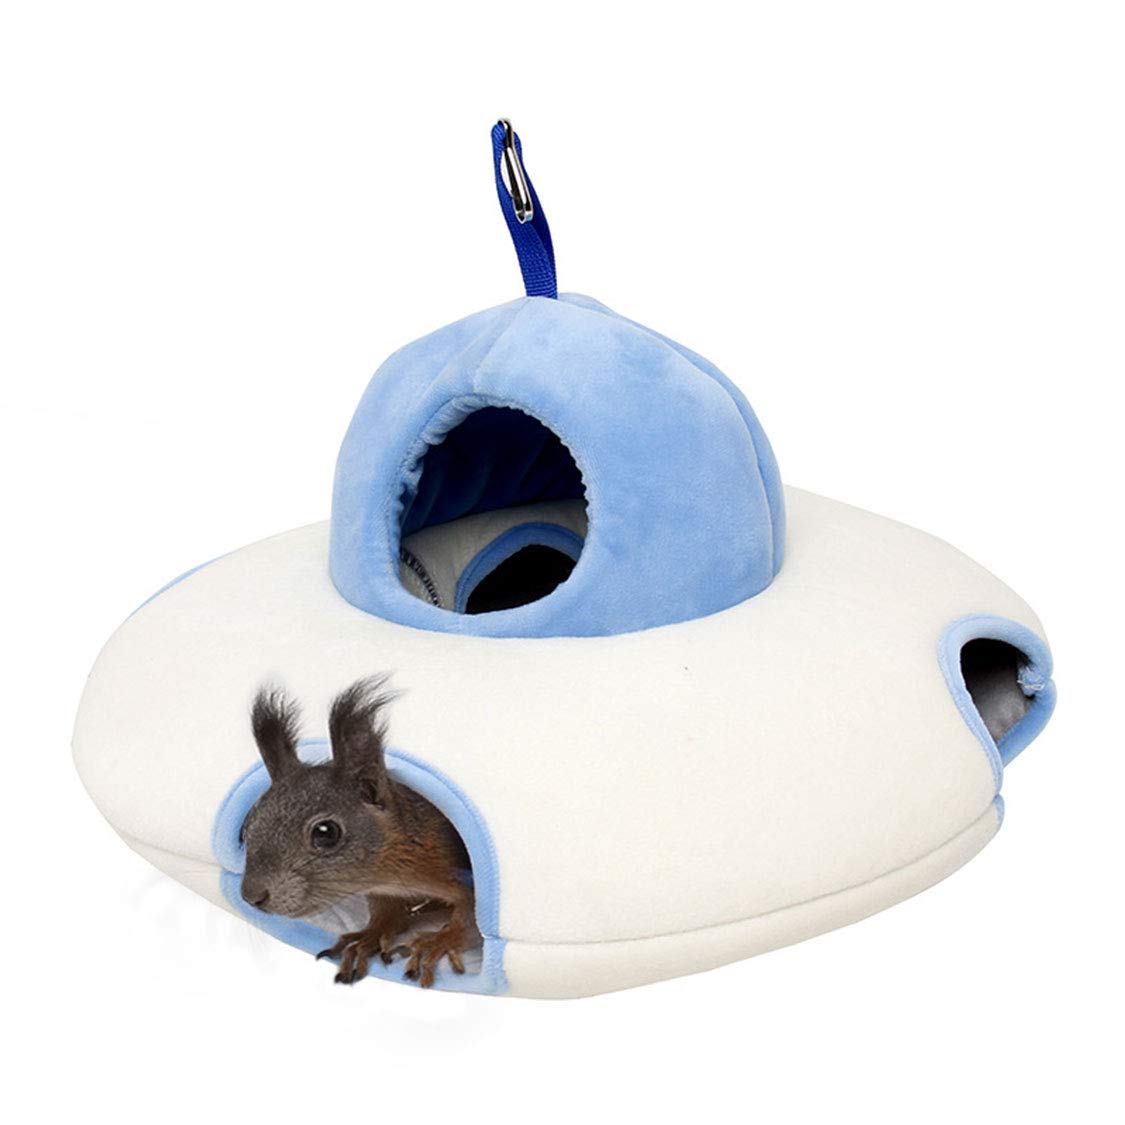 Winter kleines Haustierbett, Fliegende Untertasse Hamster Nest Maus Haus Hängematte Zucker Segelflugzeug Käfig Zubehör, Bett für kleine Tiere